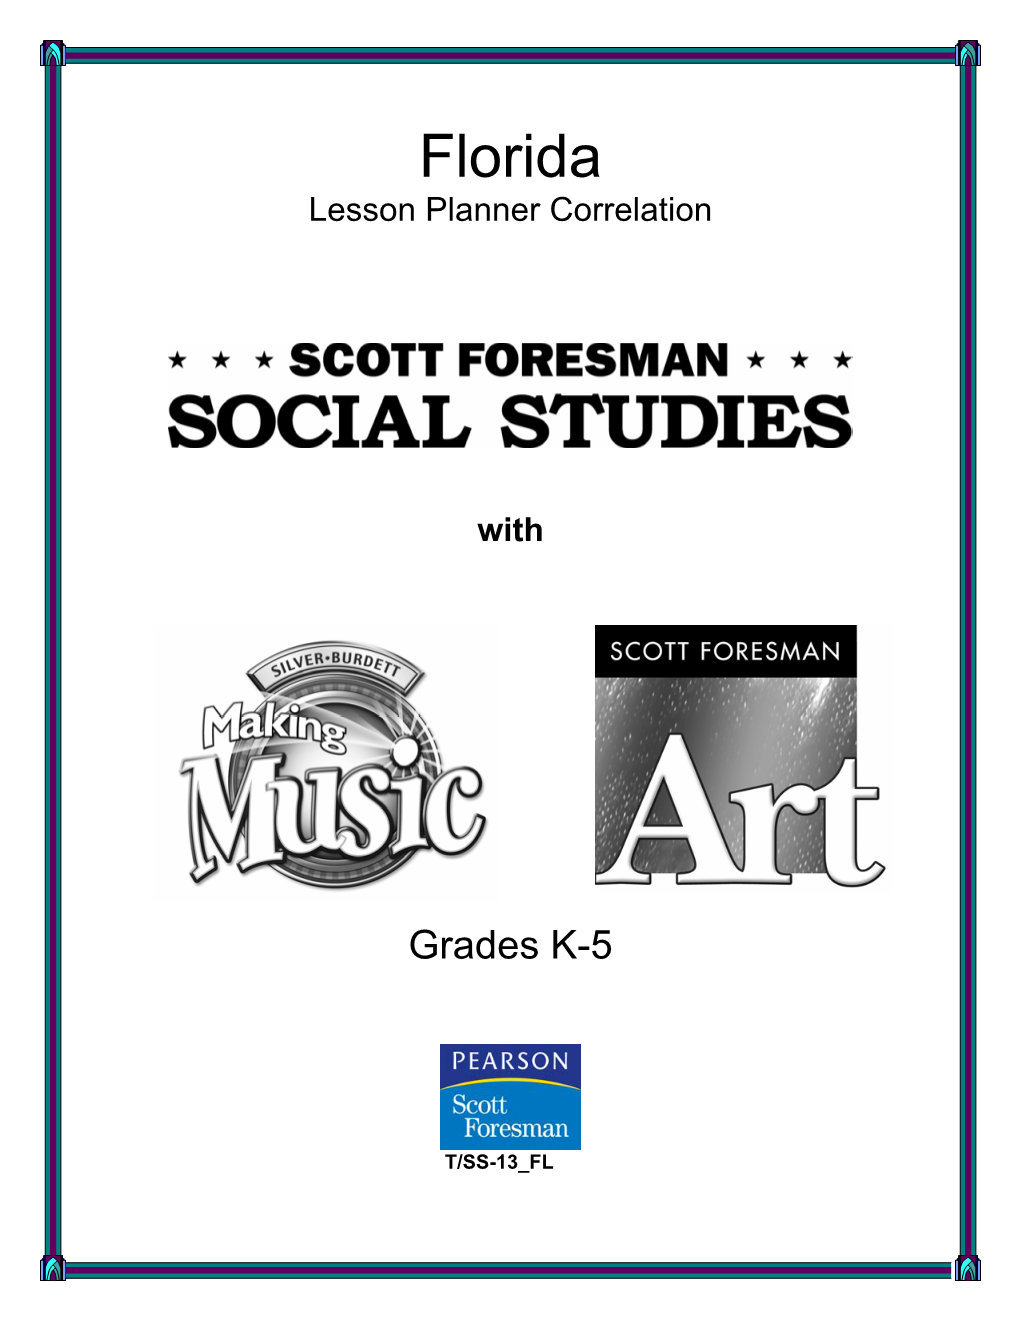 Scott Foresman Social Studies Lesson Planner